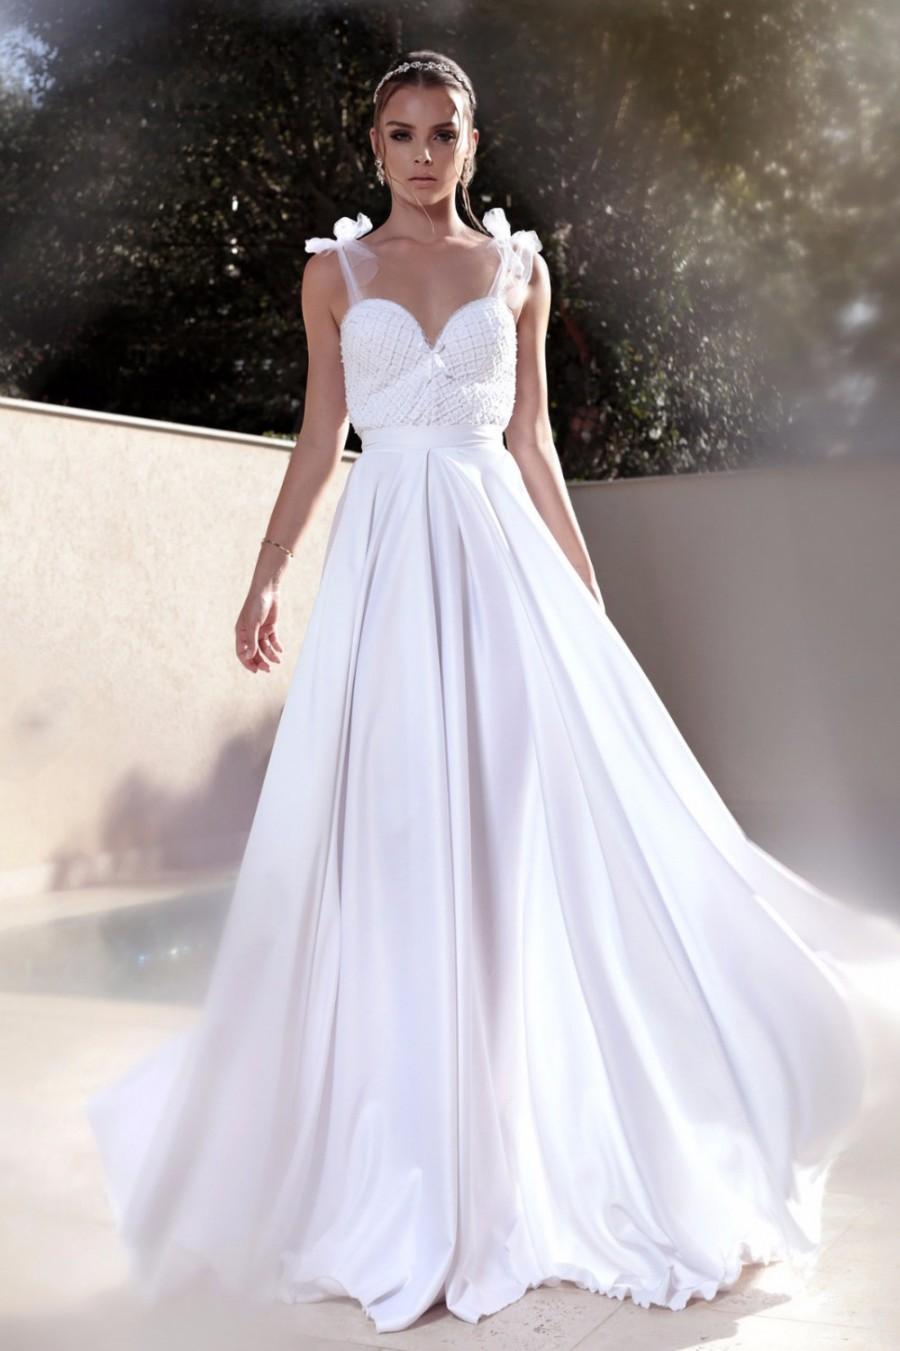 Hochzeit - White wedding dress,wedding dress open back,lace wedding dress,wedding gown,wedding dress,Wedding dress with pockets